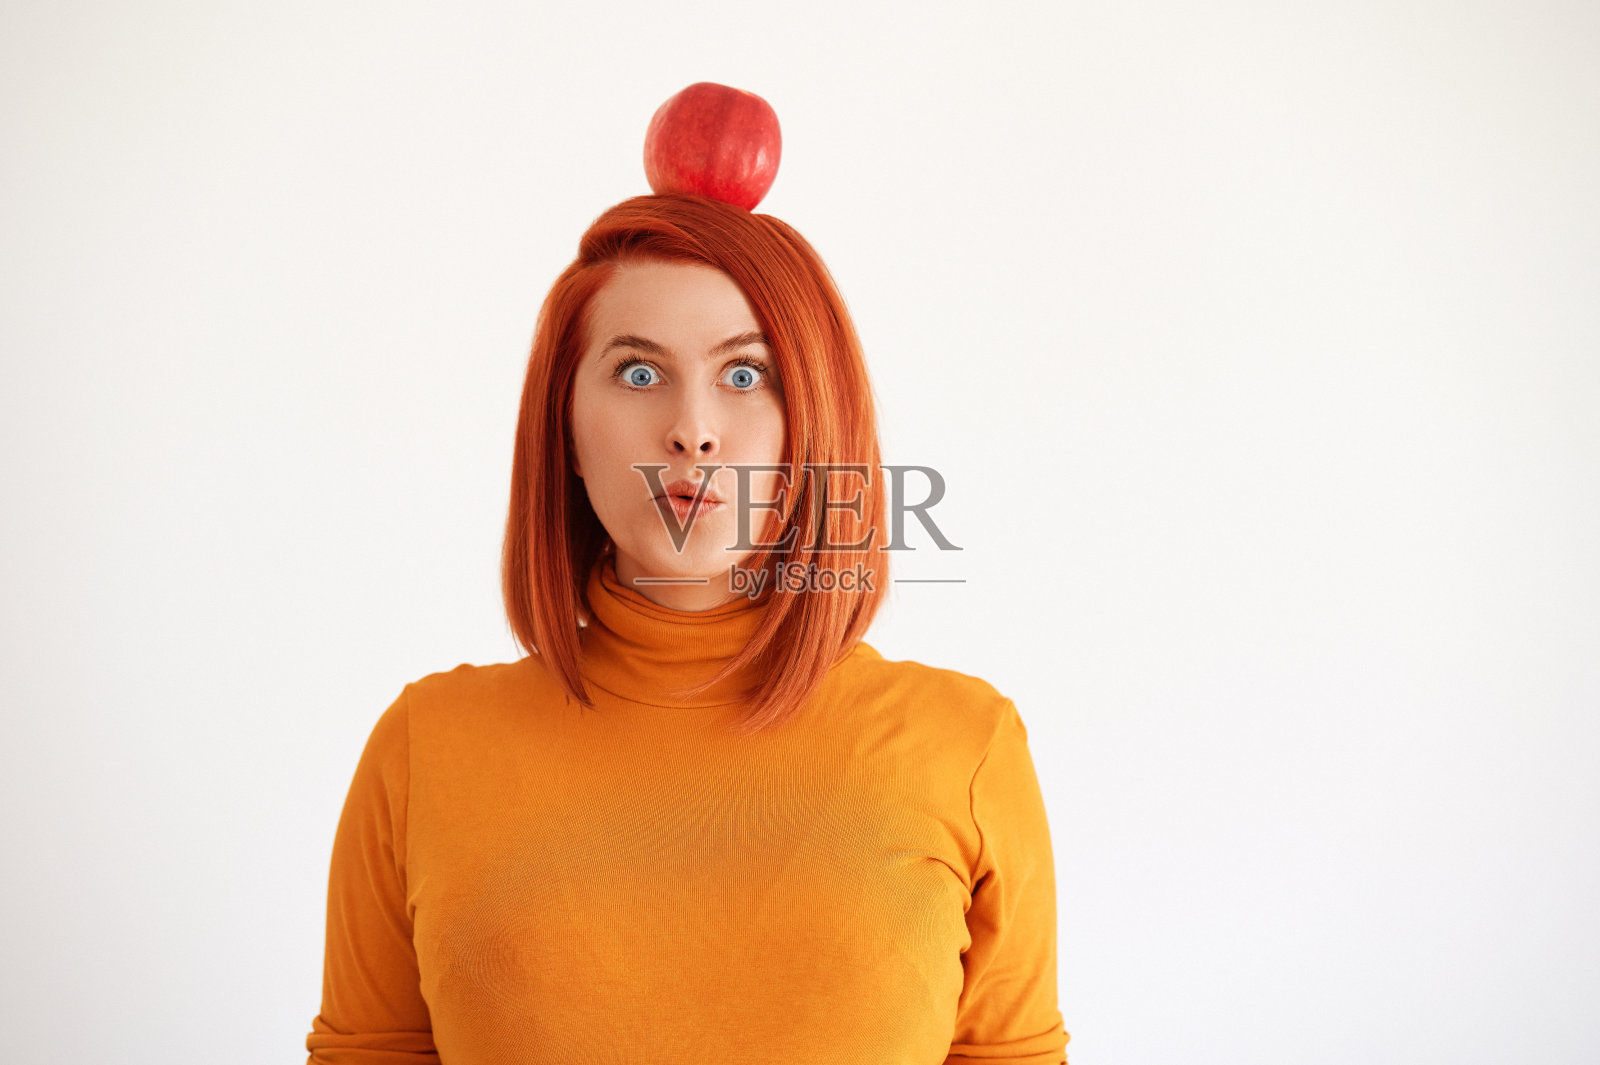 红苹果放在红头发的头上照片摄影图片